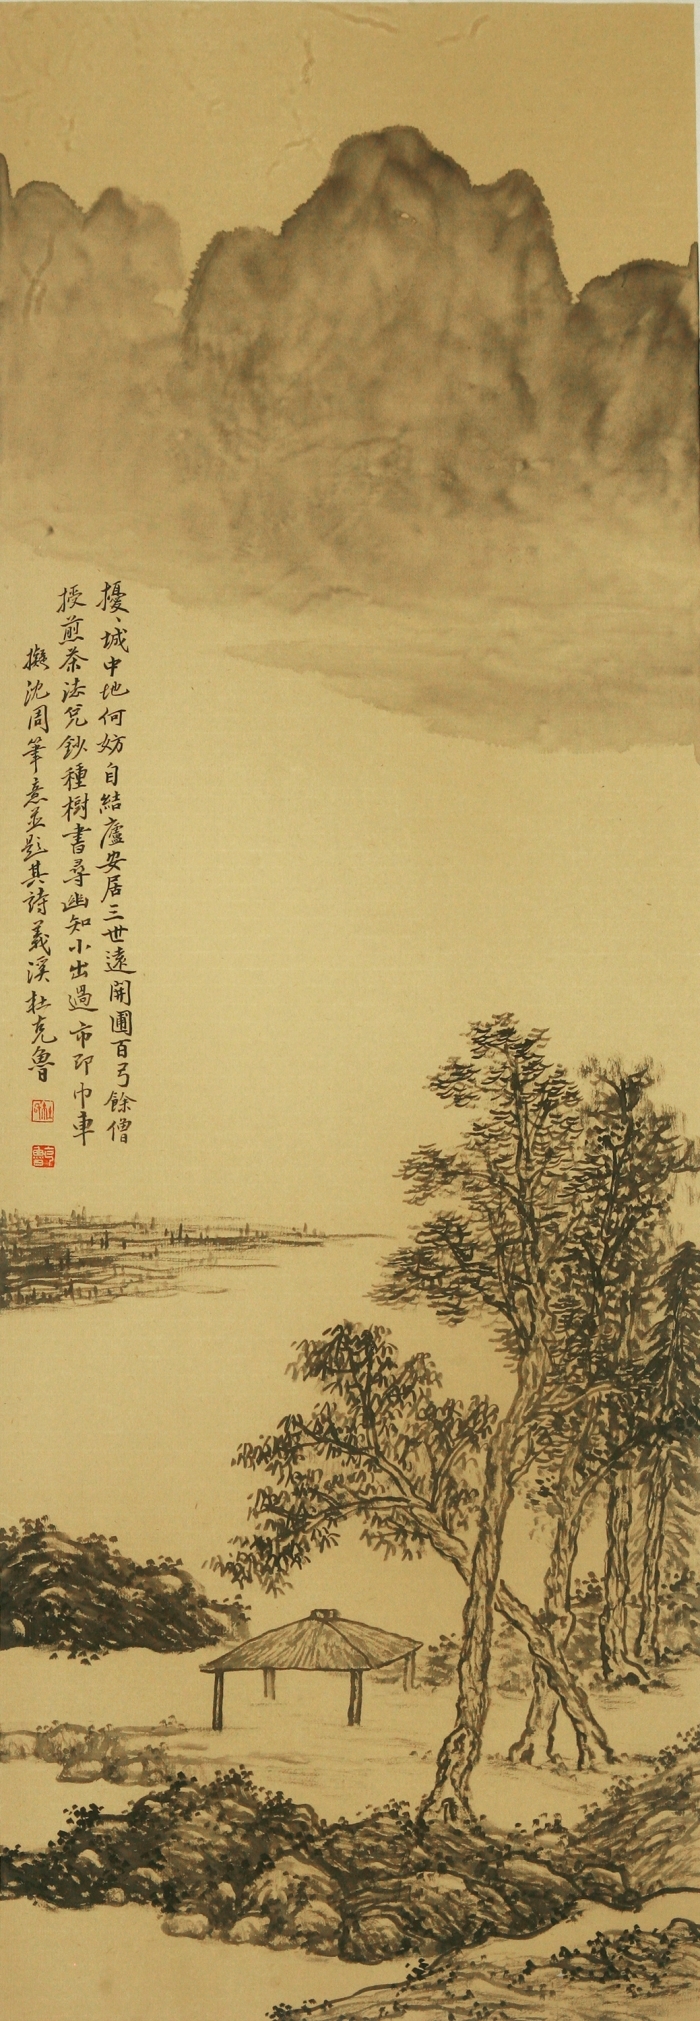 Galerie Fenghe Tang Chinesische Kunst - Der frühe Gebrauch für Heute 9